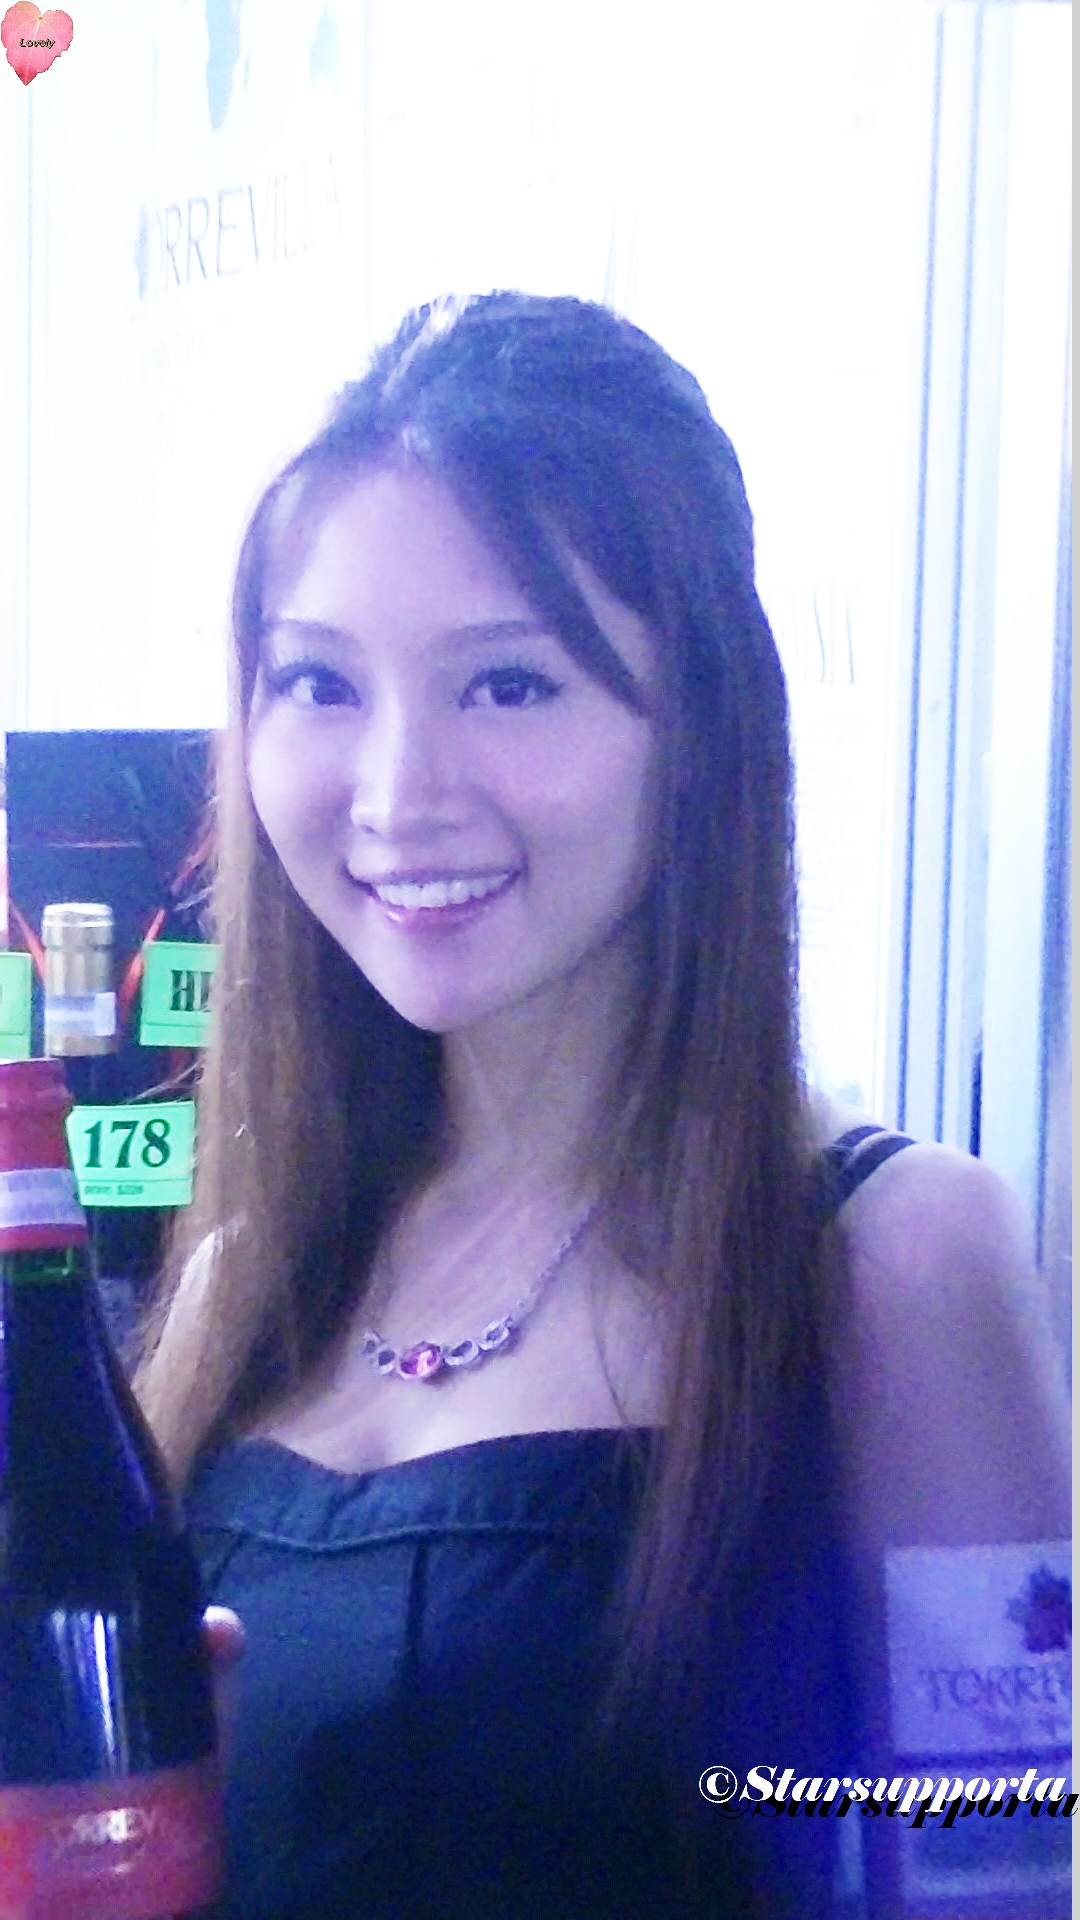 20121103 香港美酒佳餚巡禮 - Torrenvilla @ 香港尖沙咀西九龍海濱長廊